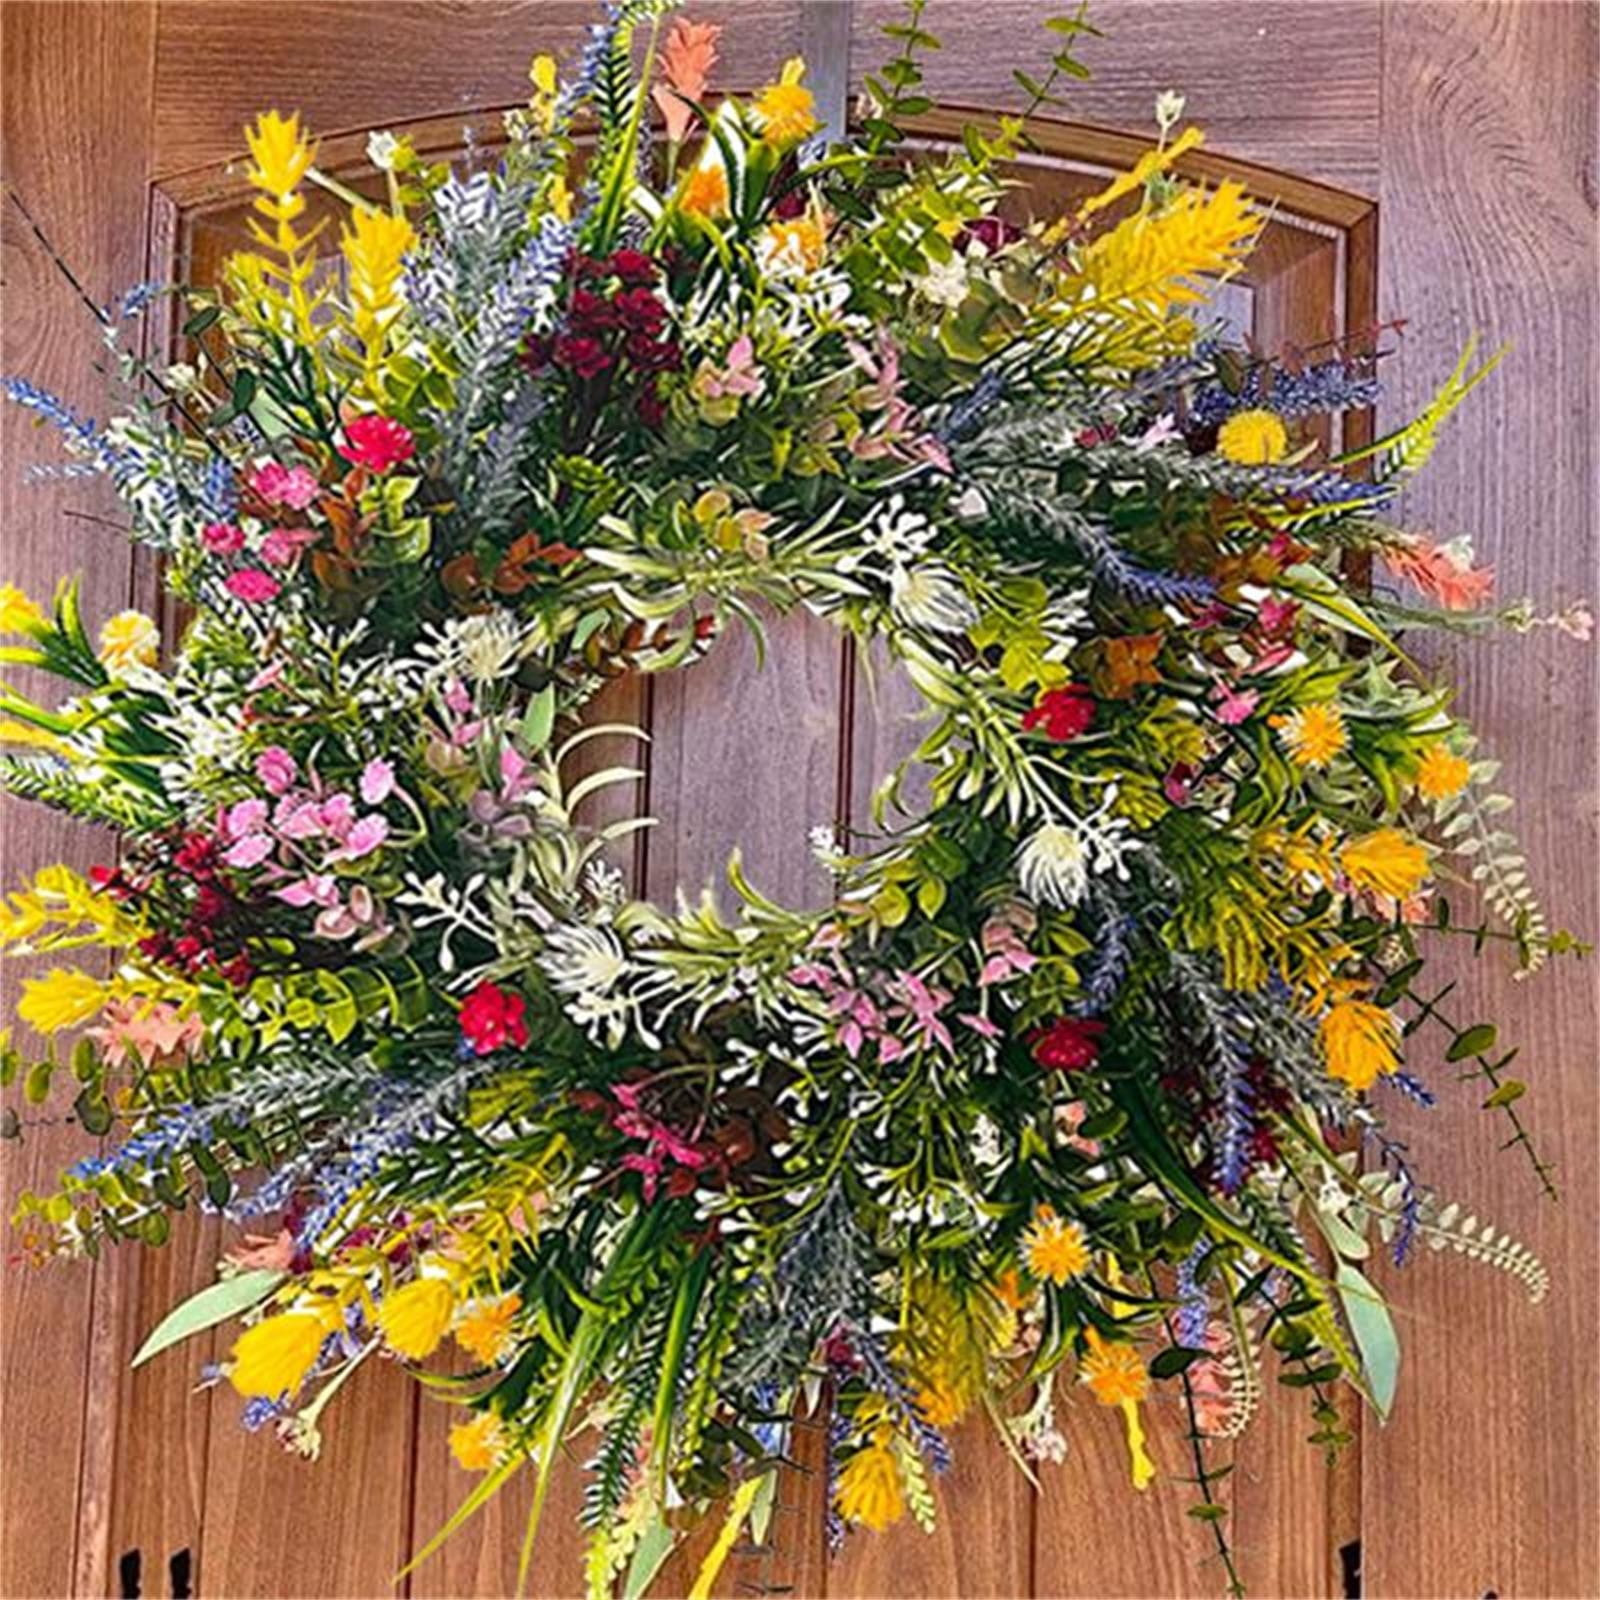 Year Round Wreath, Welcome Door Hanger, Wreaths For Front Door